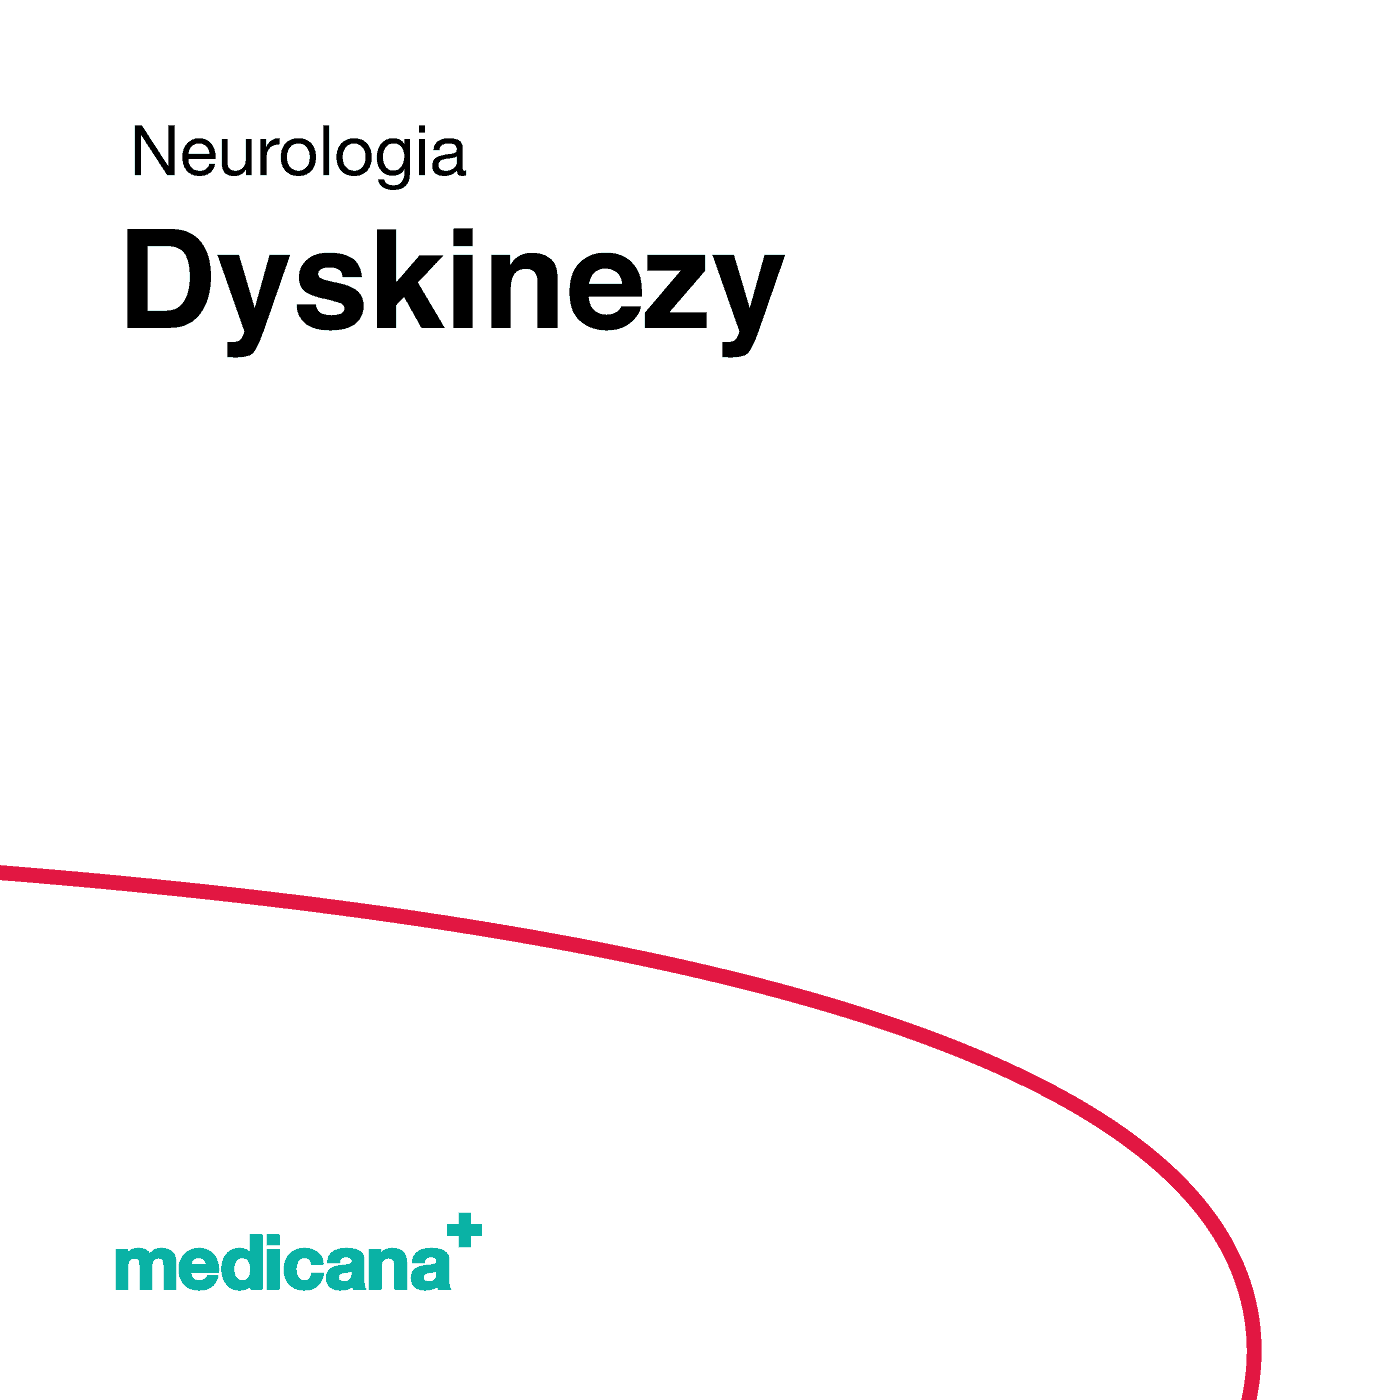 Grafika, białe tło z czerwoną kreską, czarnym napisem Neurologia - Dyskinezy i logo Medicana Centrum Terapii Medyczna Marihuana w lewym dolnym rogu.